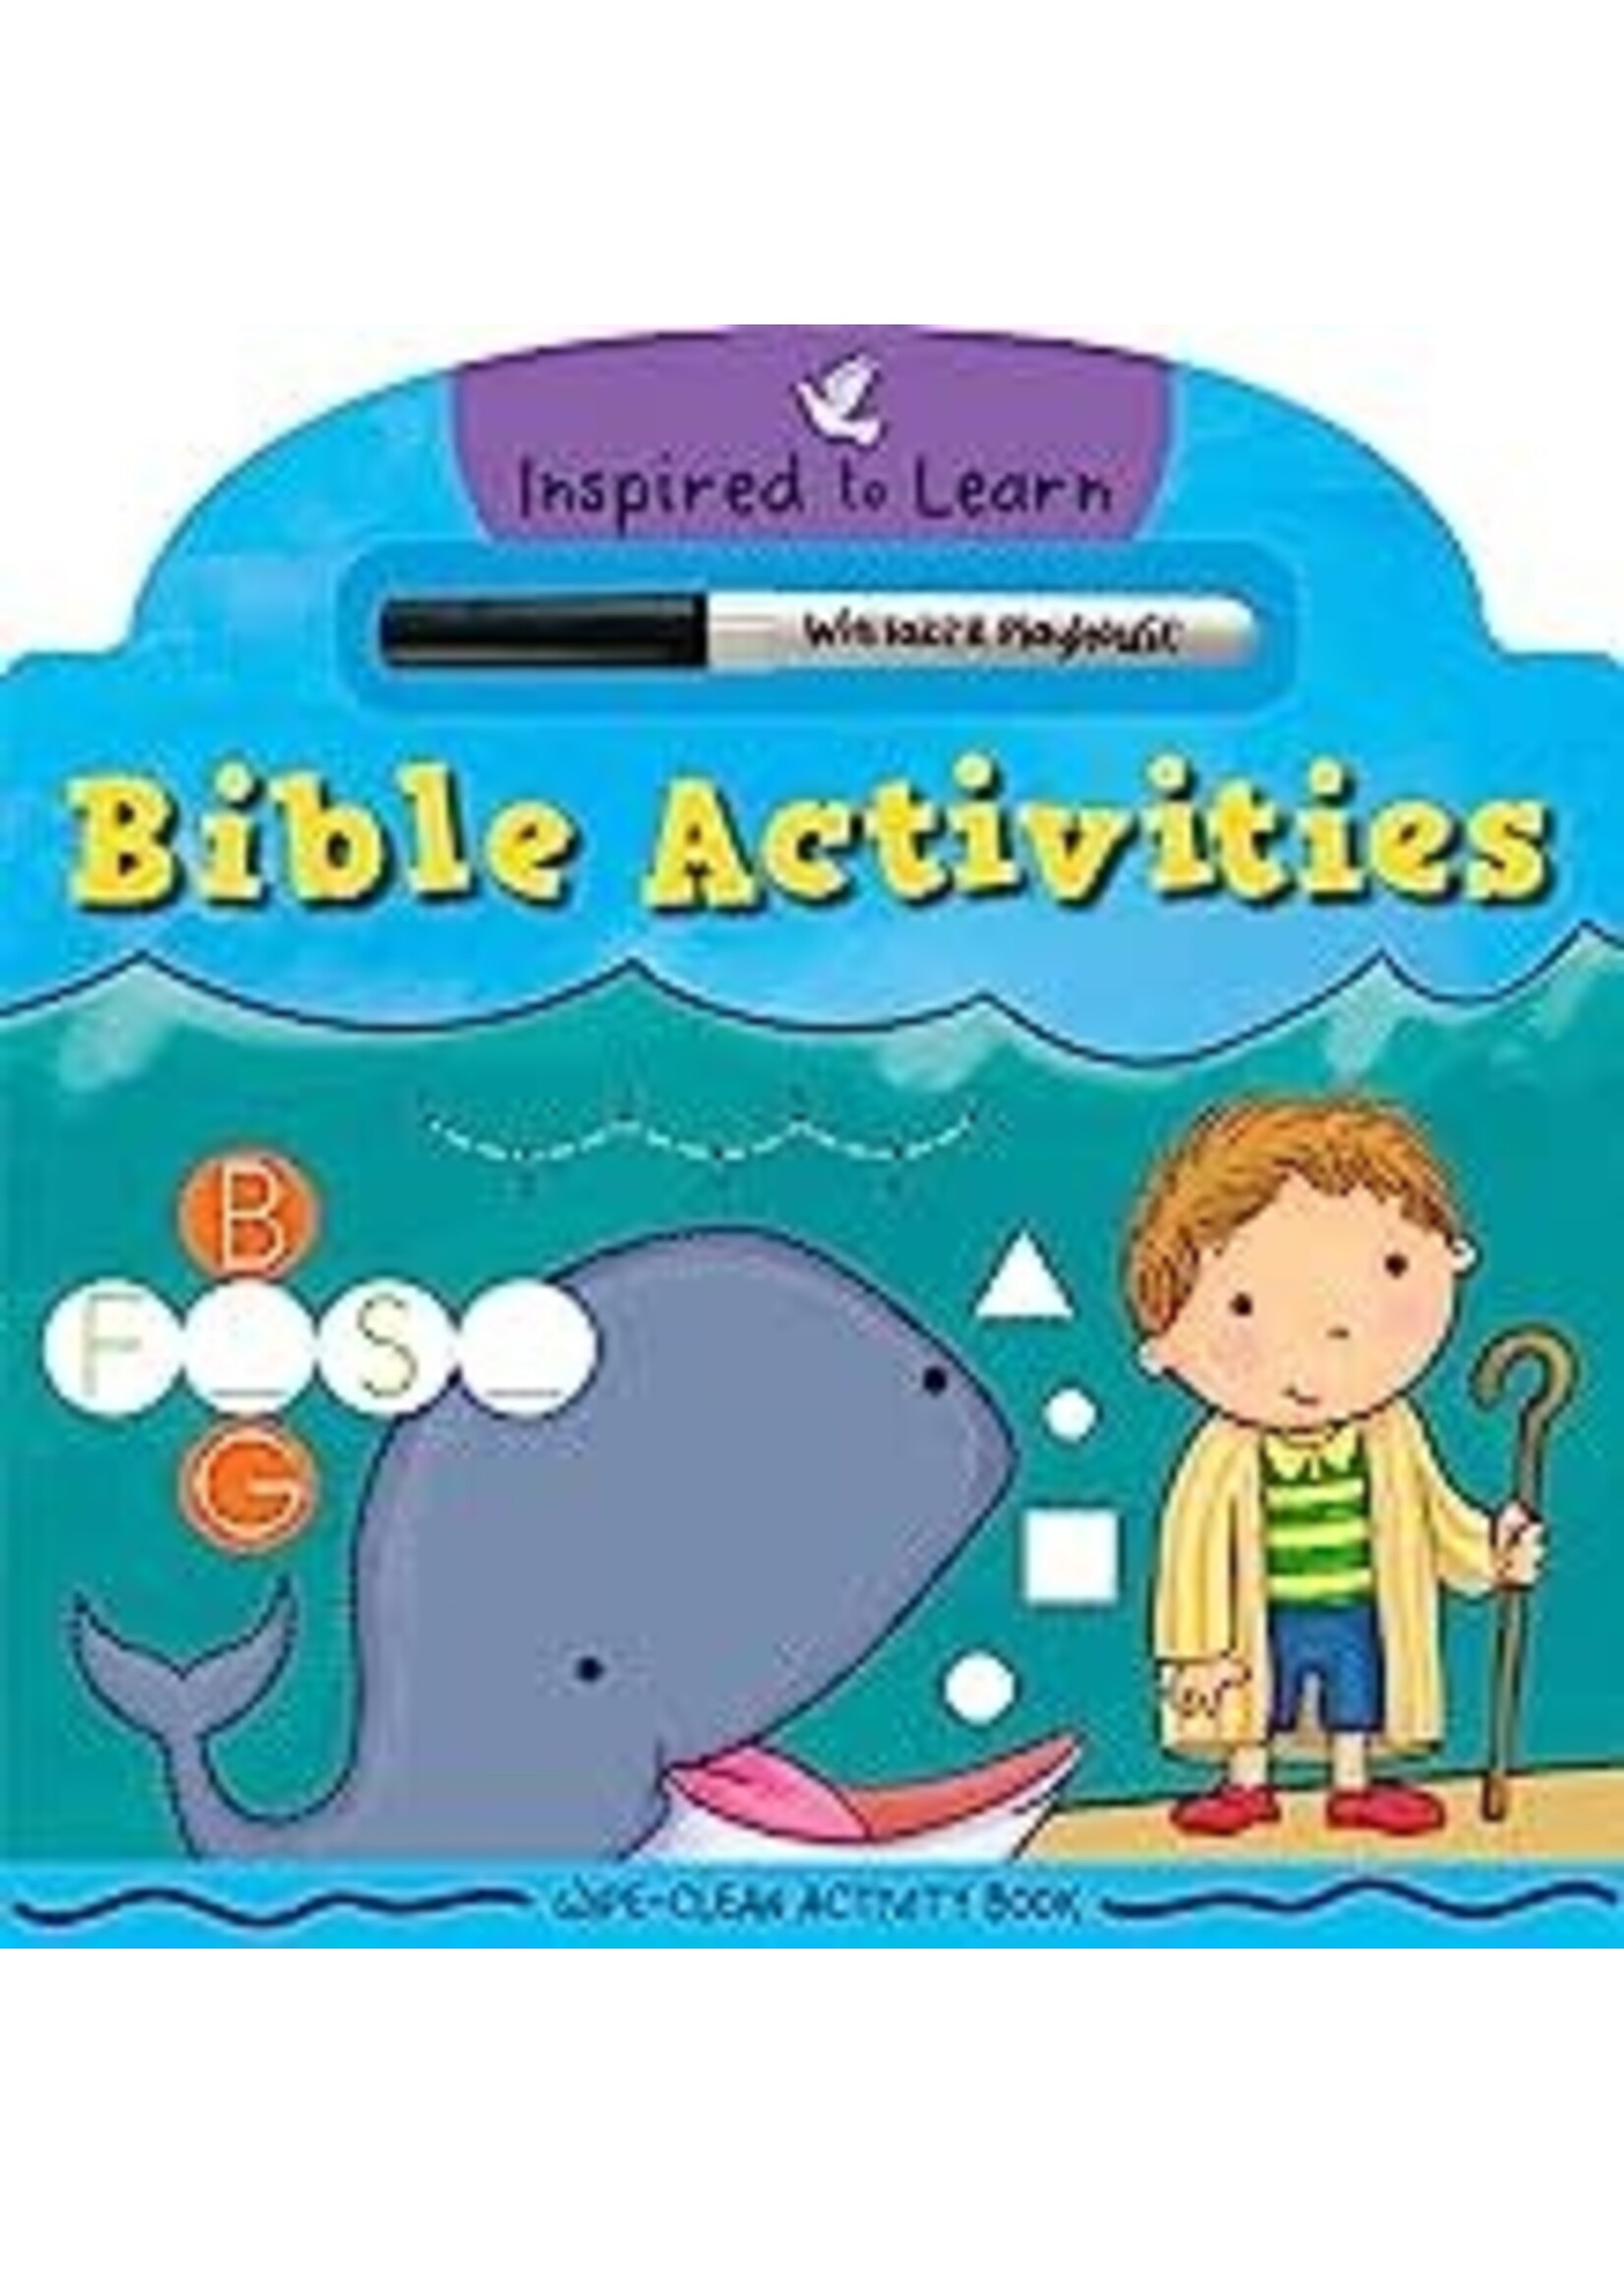 BIBLE ACTIVITIES WIPE CLEAN ACTIVIT